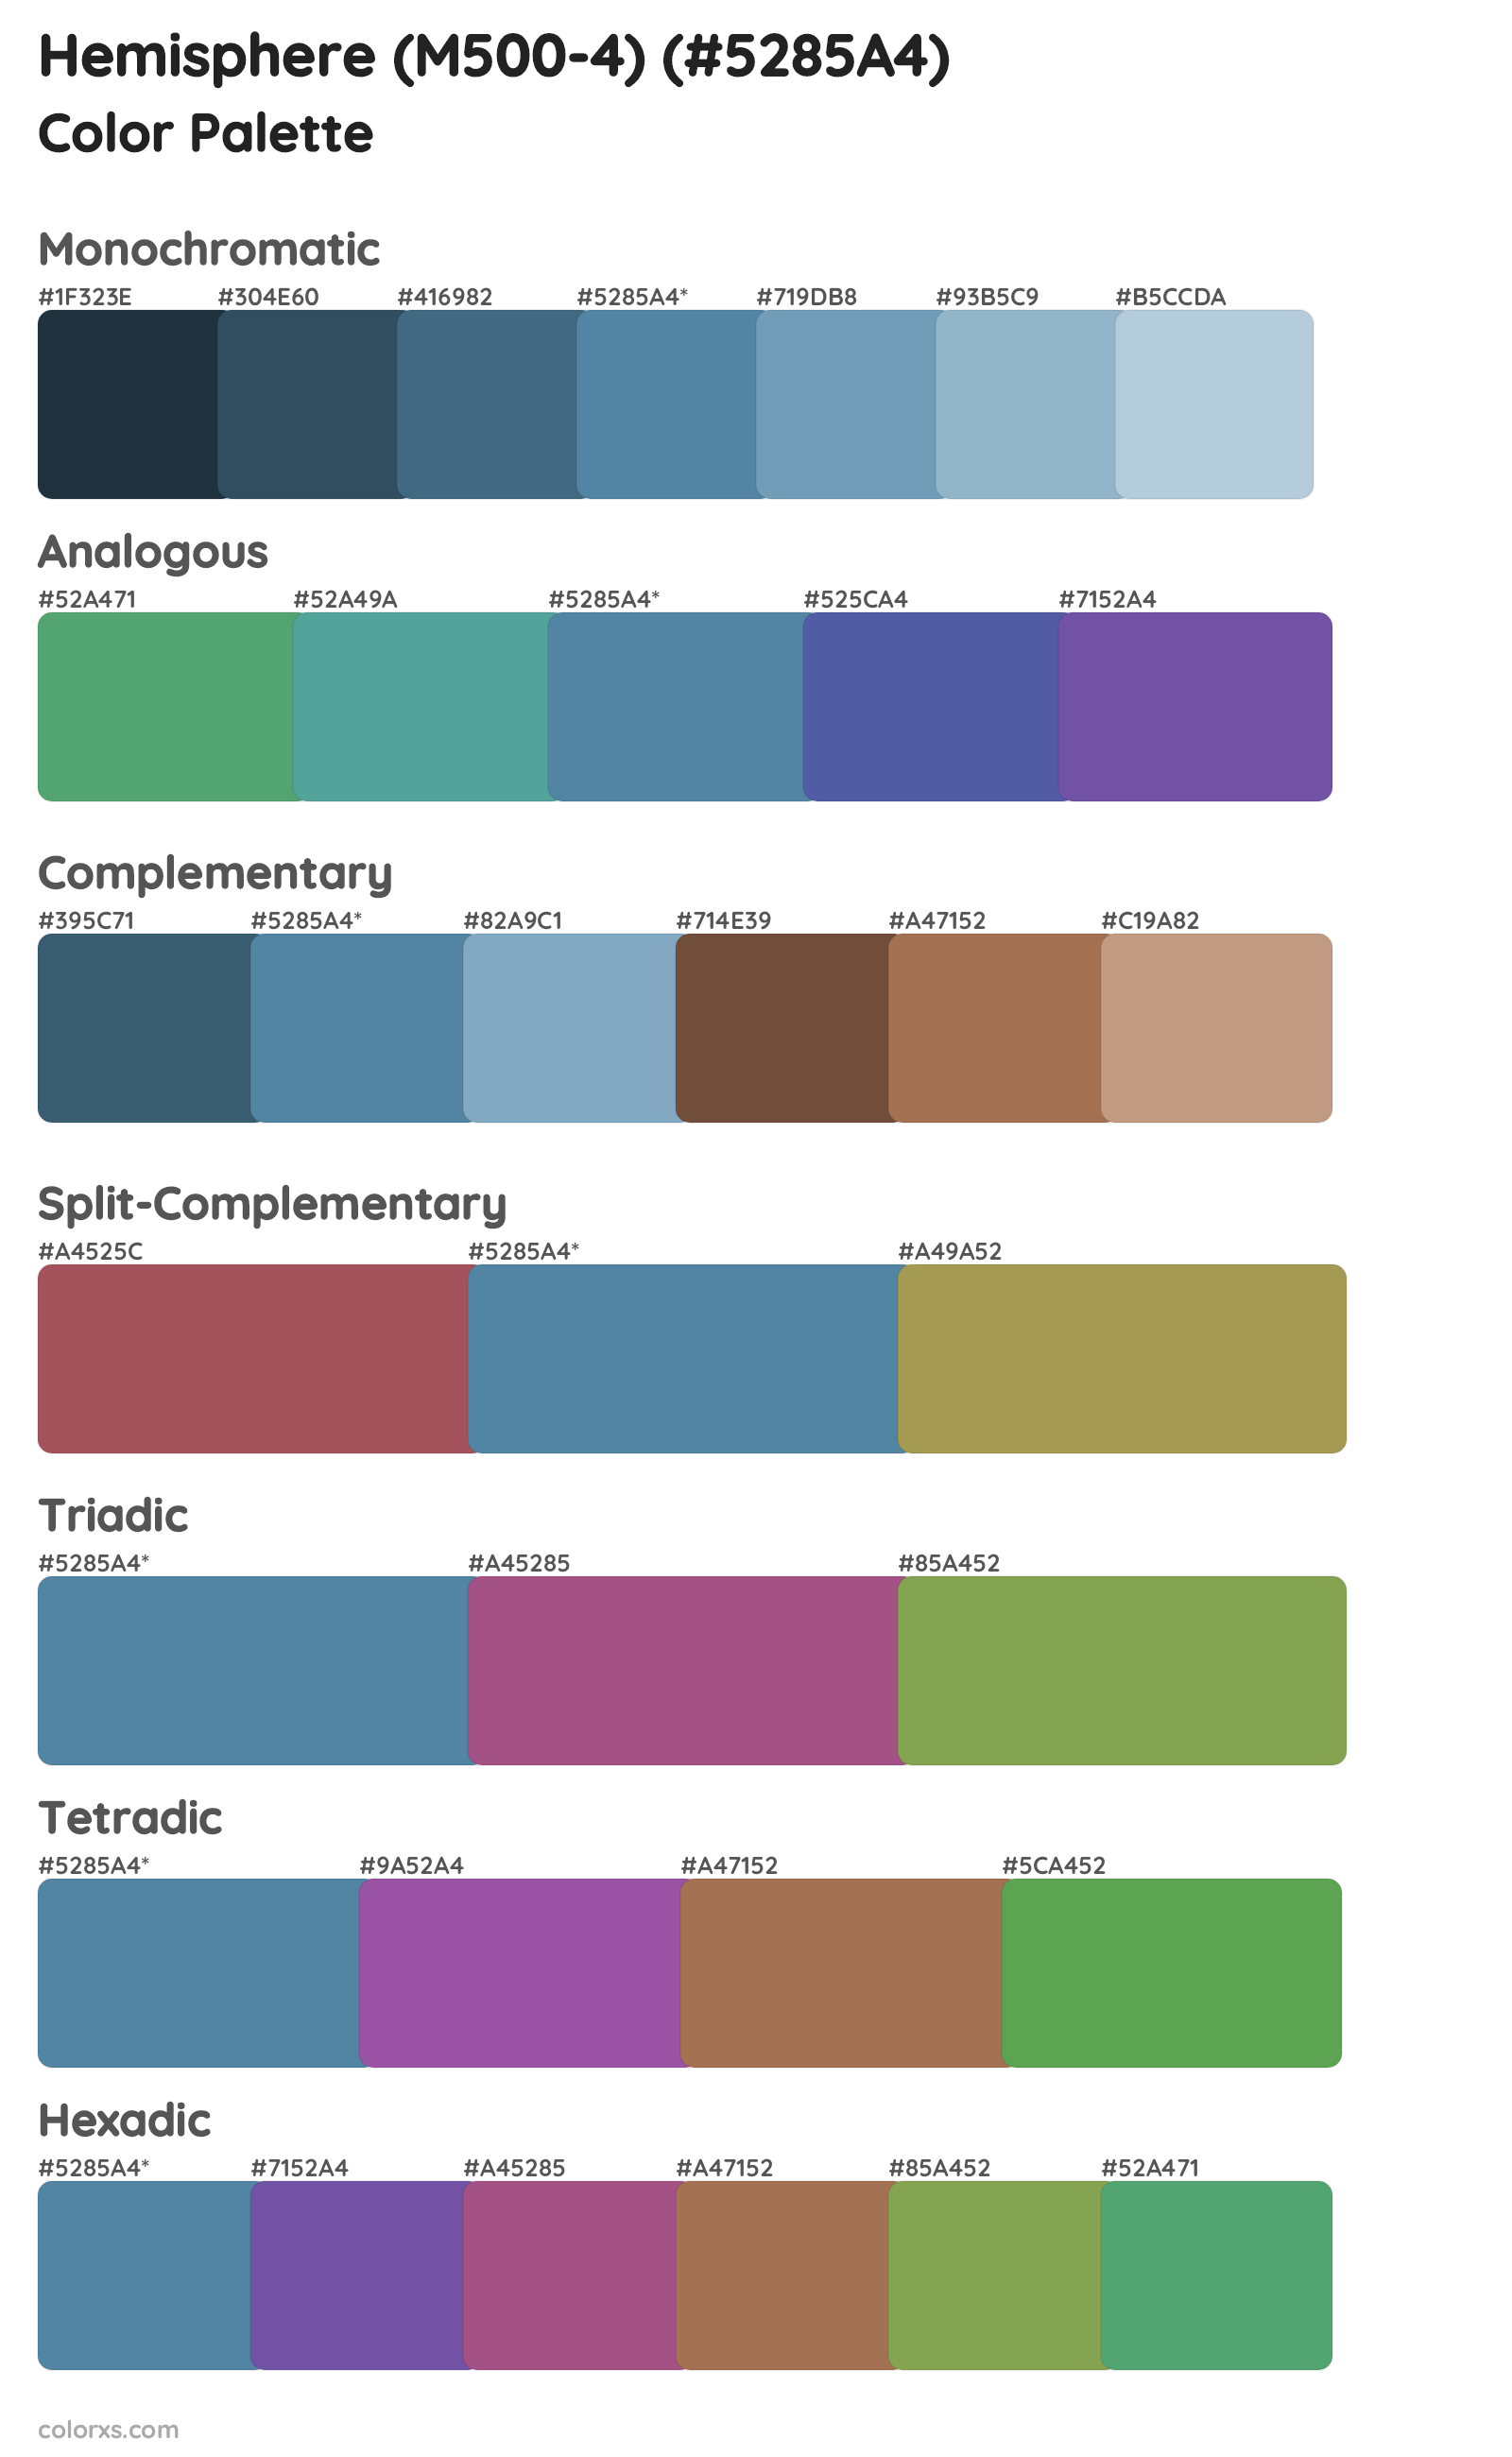 Hemisphere (M500-4) Color Scheme Palettes